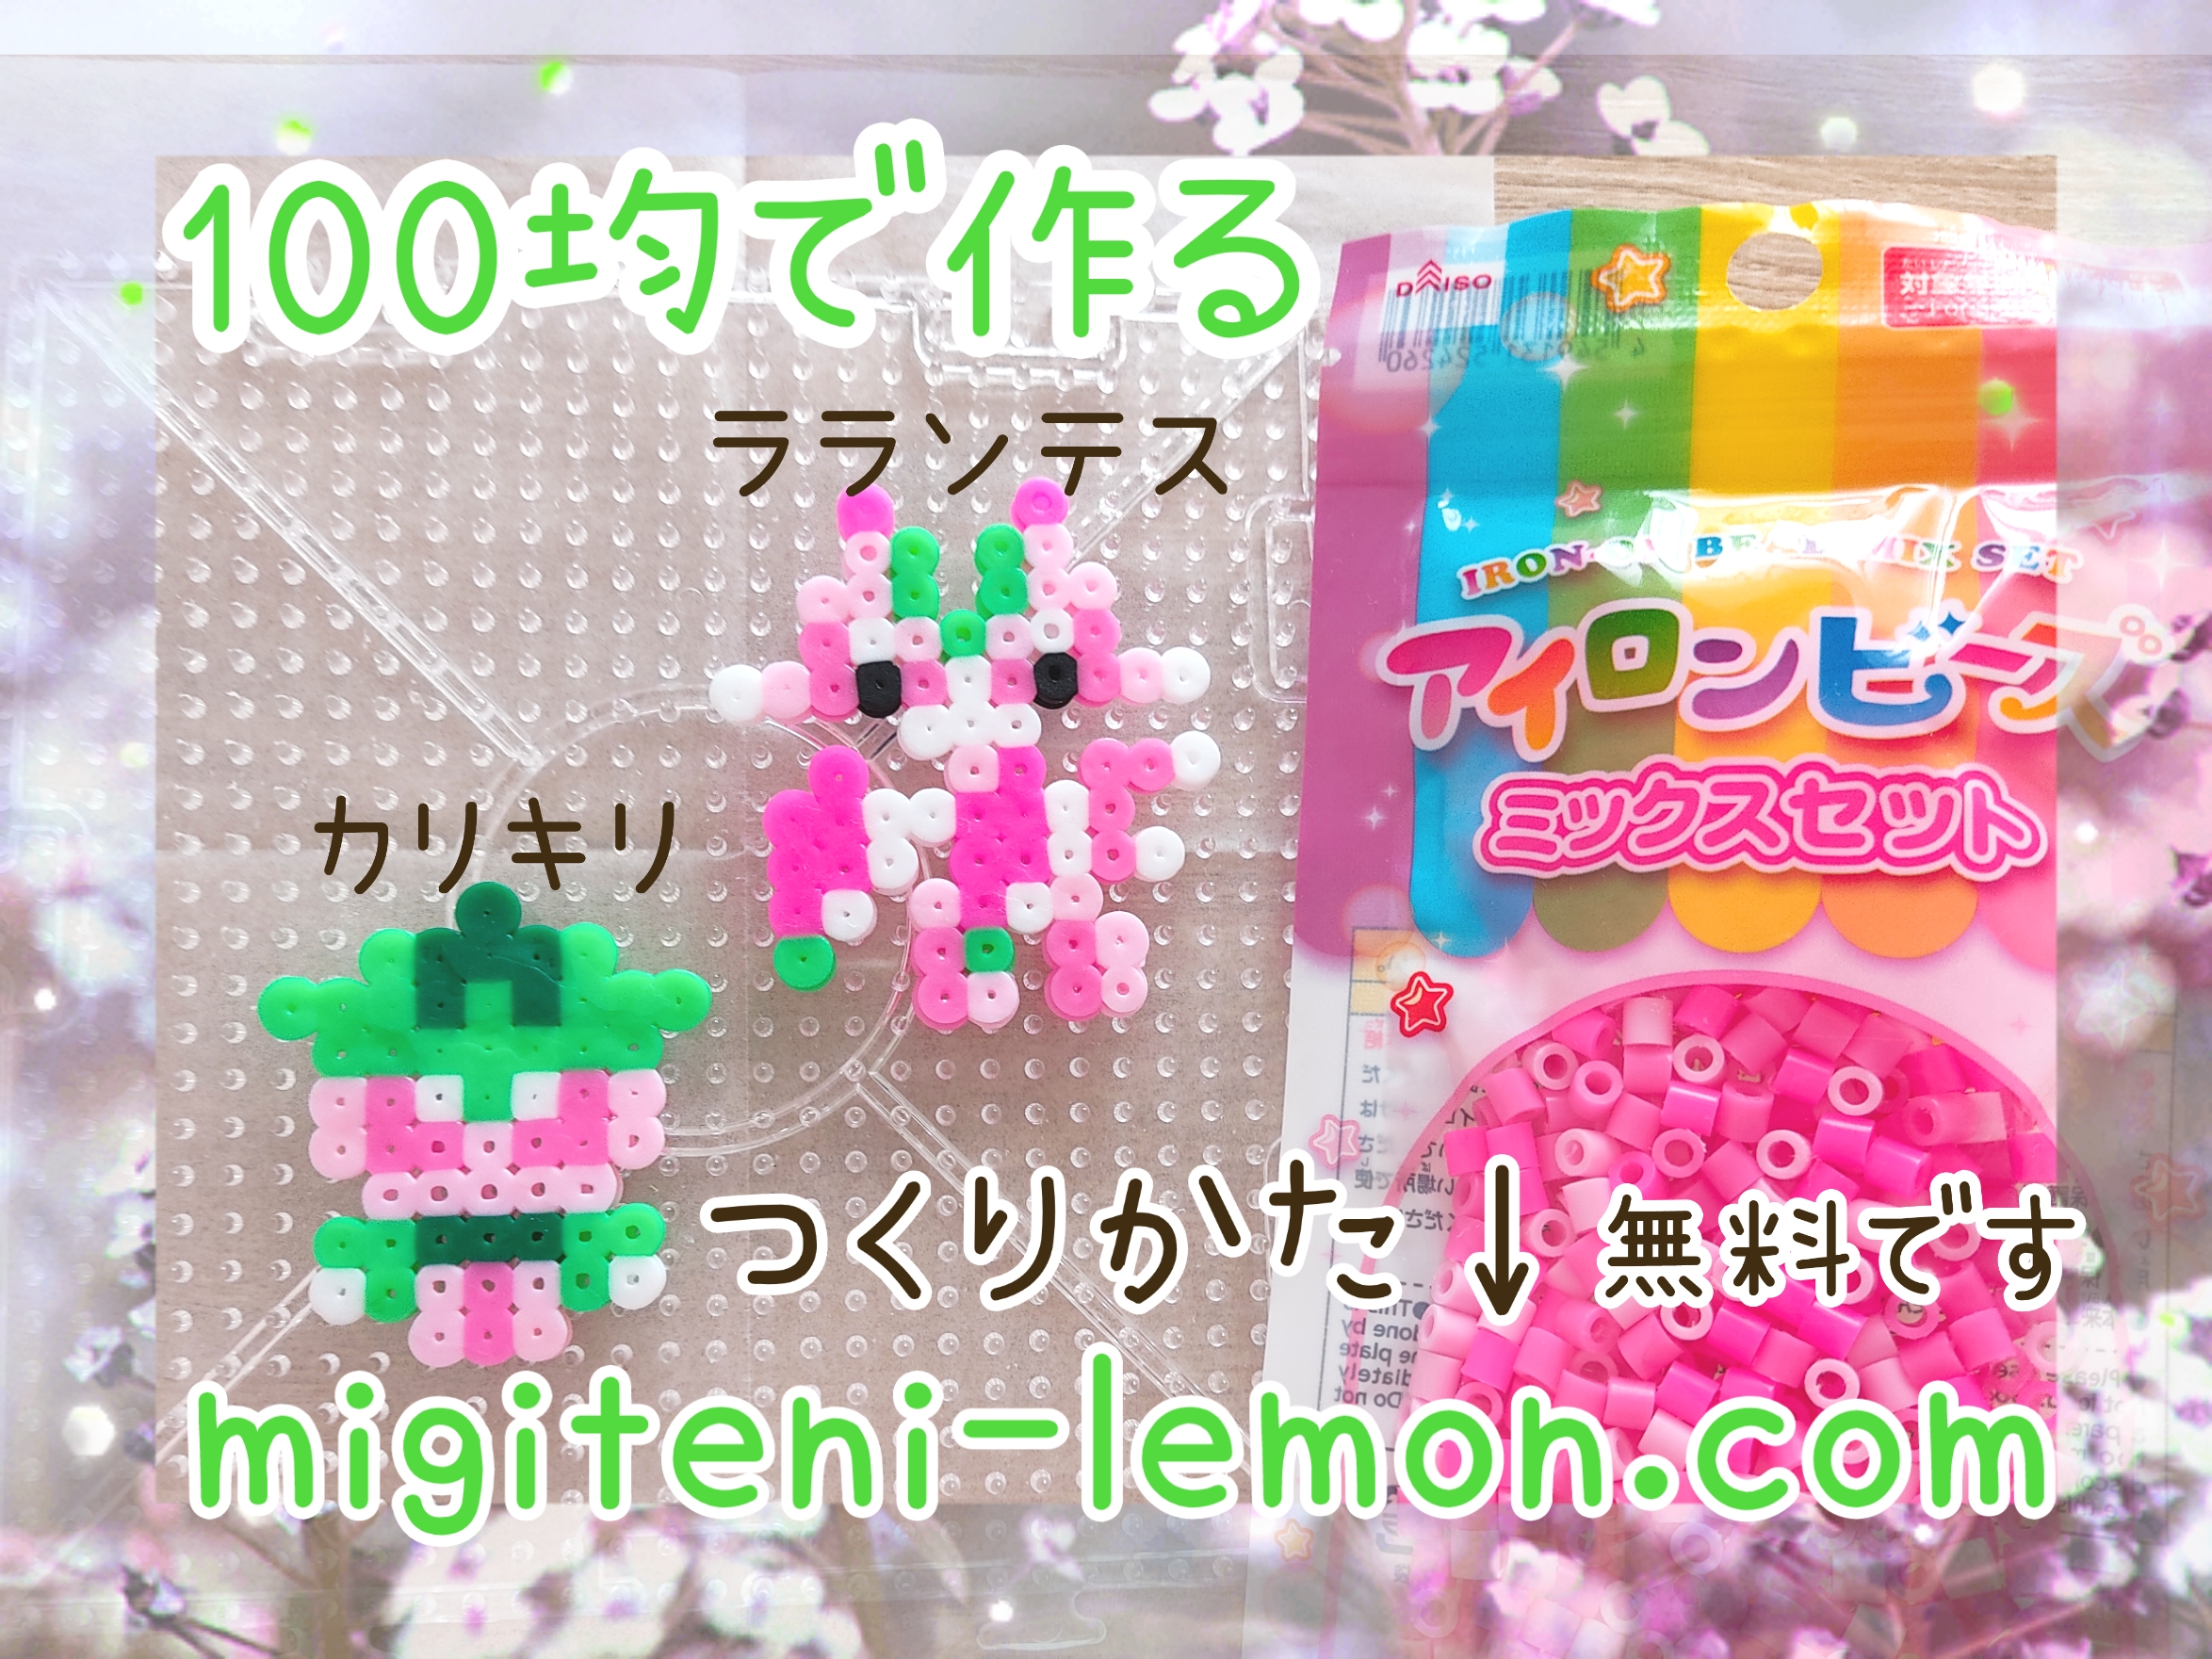 karikiri-fomantis-lalantes-lurantis-pokemon-sunmoon-kawaii-handmade-iron-beads-daiso-free-zuan-square